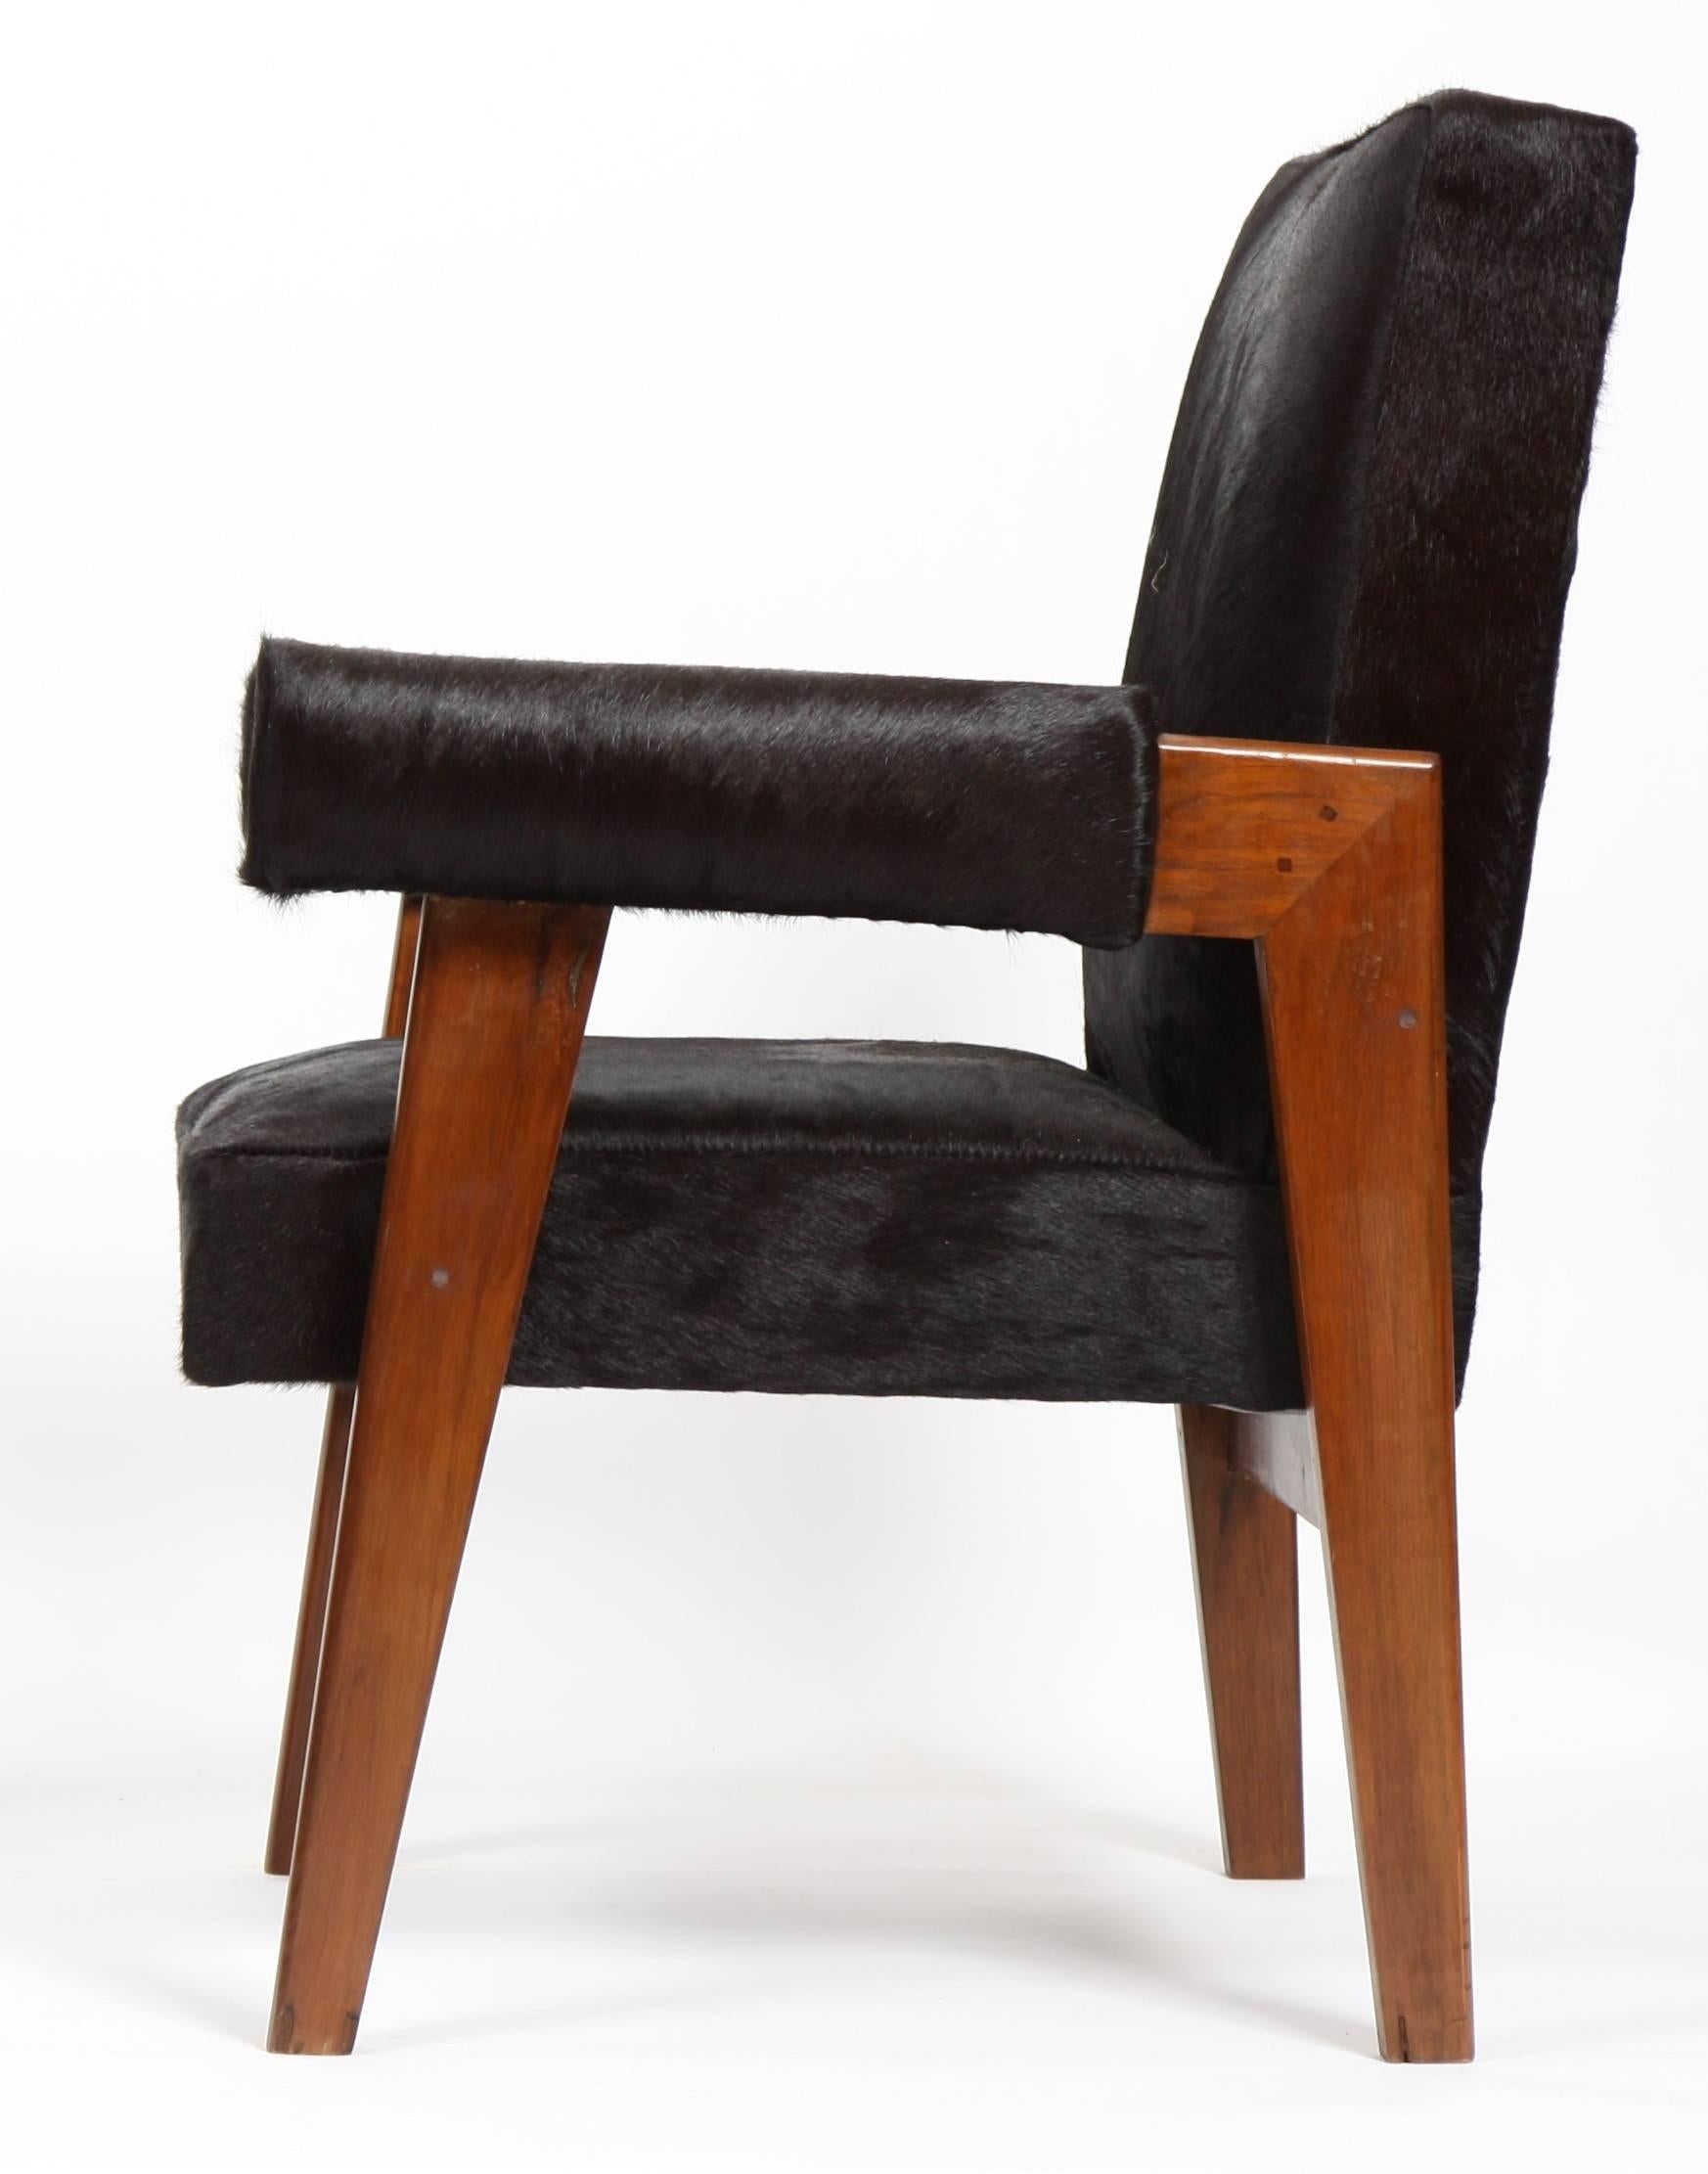 Le Corbusier (1887-1965) - Pierre Jeanneret (1896-1967)
Fauteuil d'avocat modèle fauteuil en teck avec un dossier plat et incliné et des pieds latéraux en pont.
Accoudoirs détachés avec poignets arrondis. Siège, dossier et poignets recouverts de